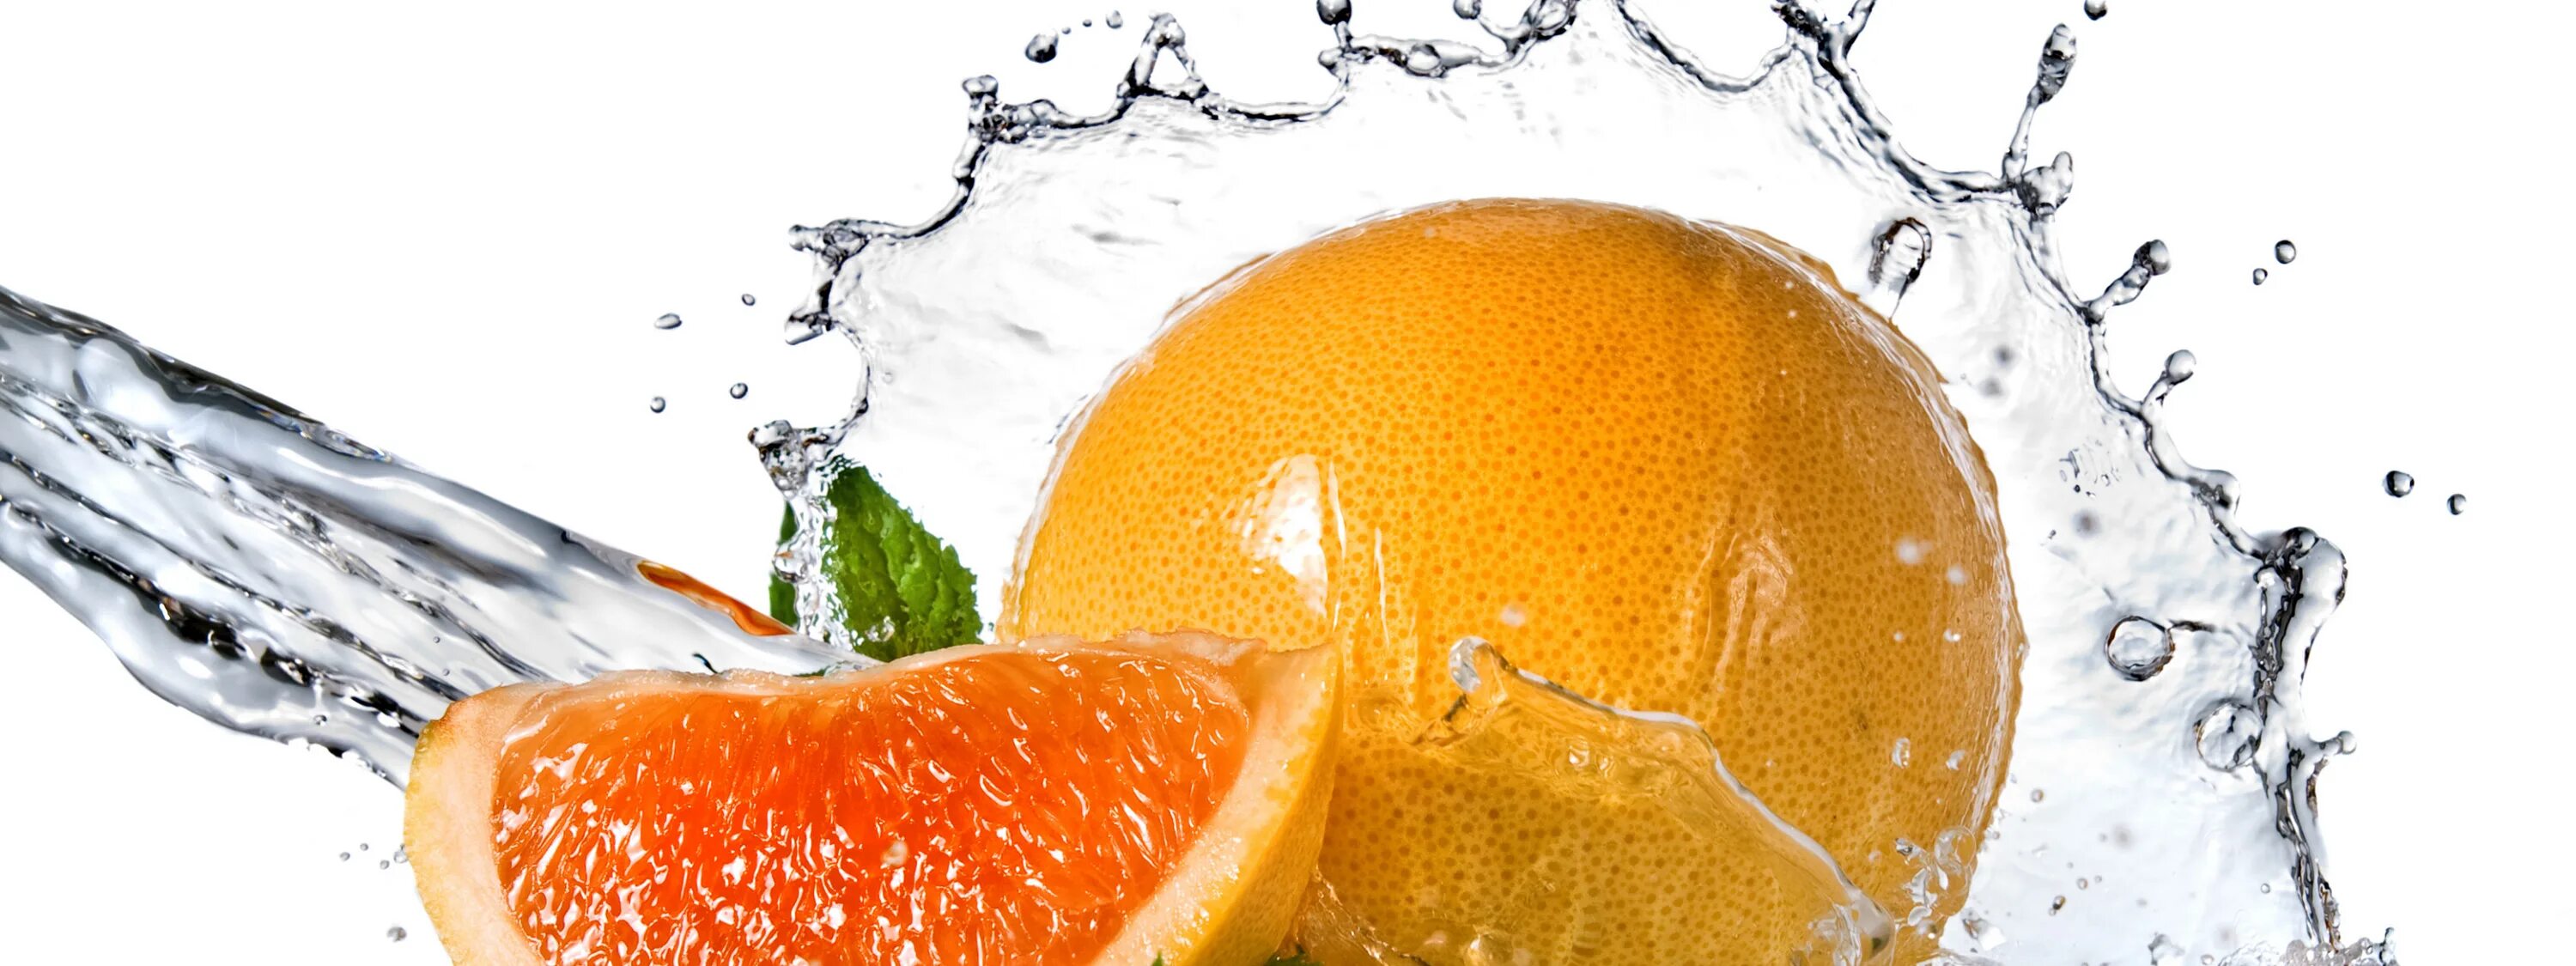 Апельсин в воде. Фруктовая свежесть. Фото фрукты в воде. Обои на рабочий стол апельсин в воде.